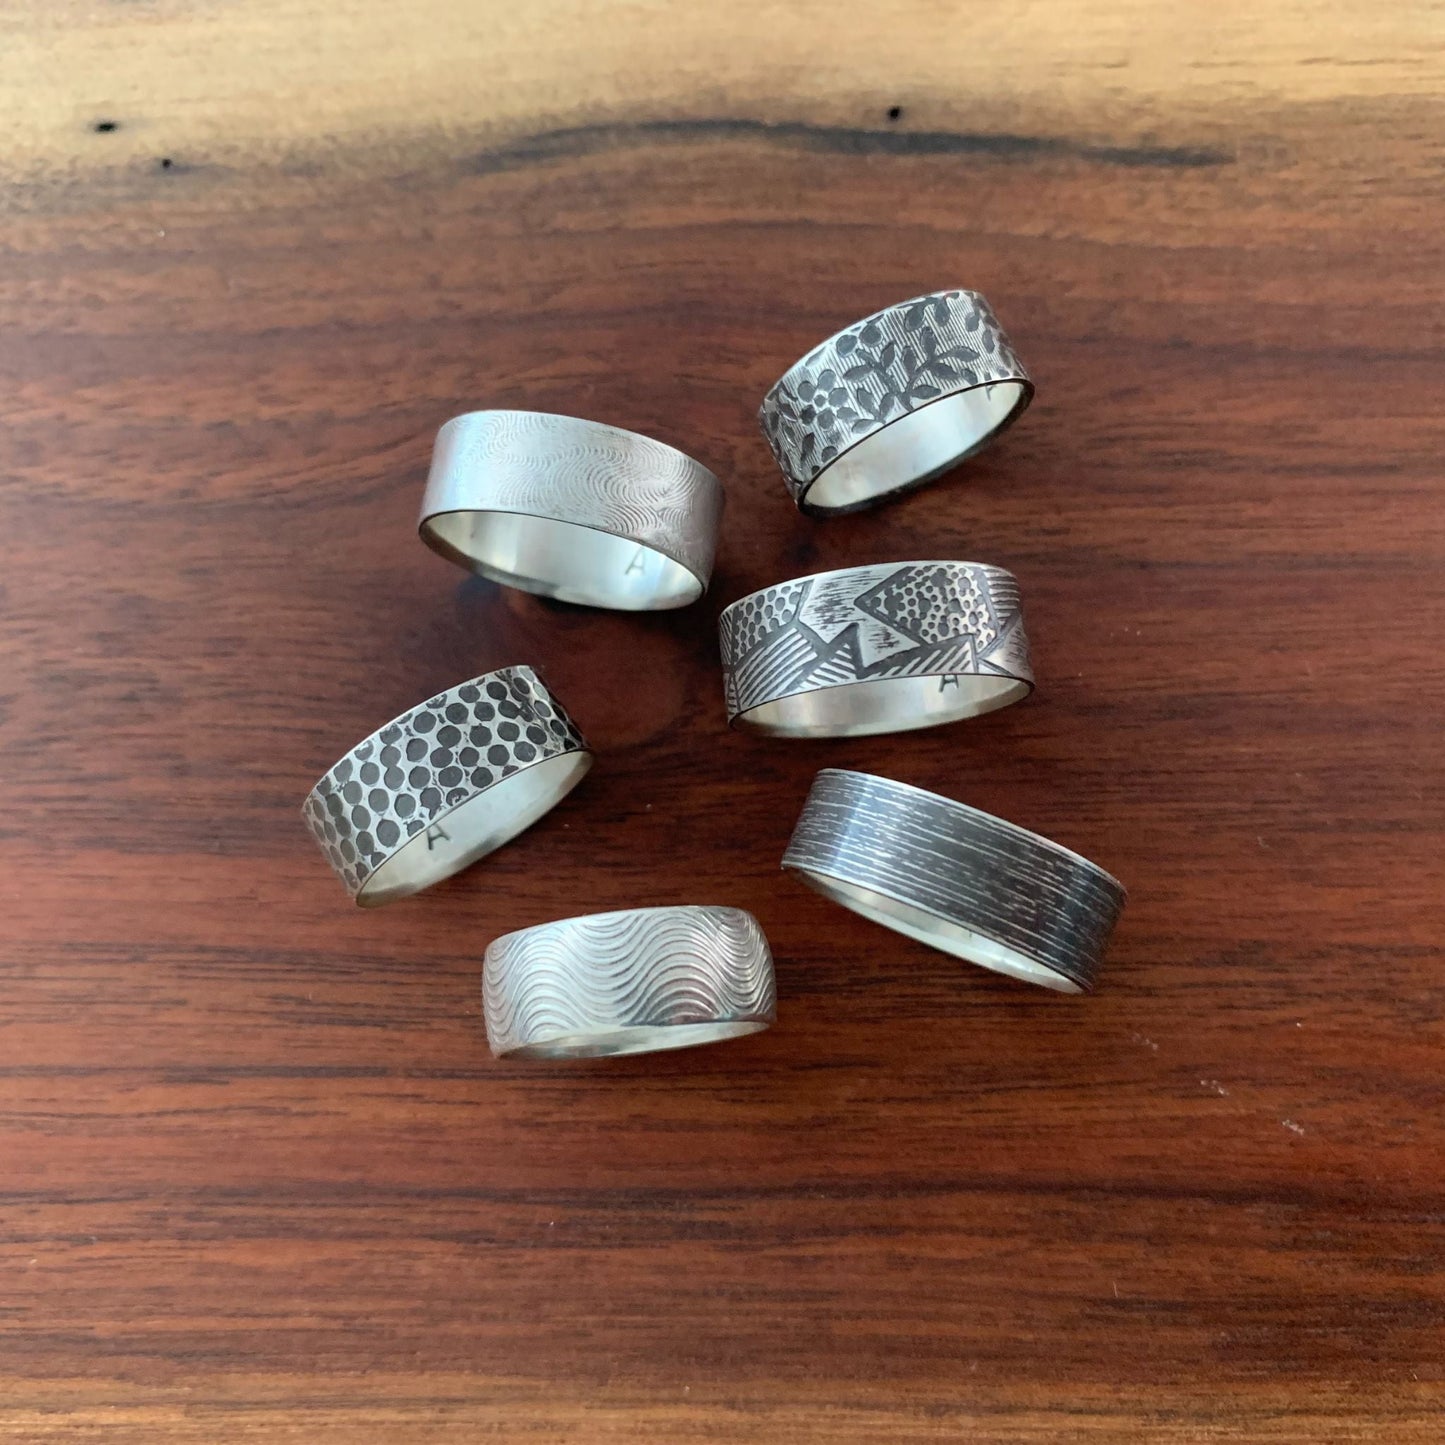 Metals 1 ring samples